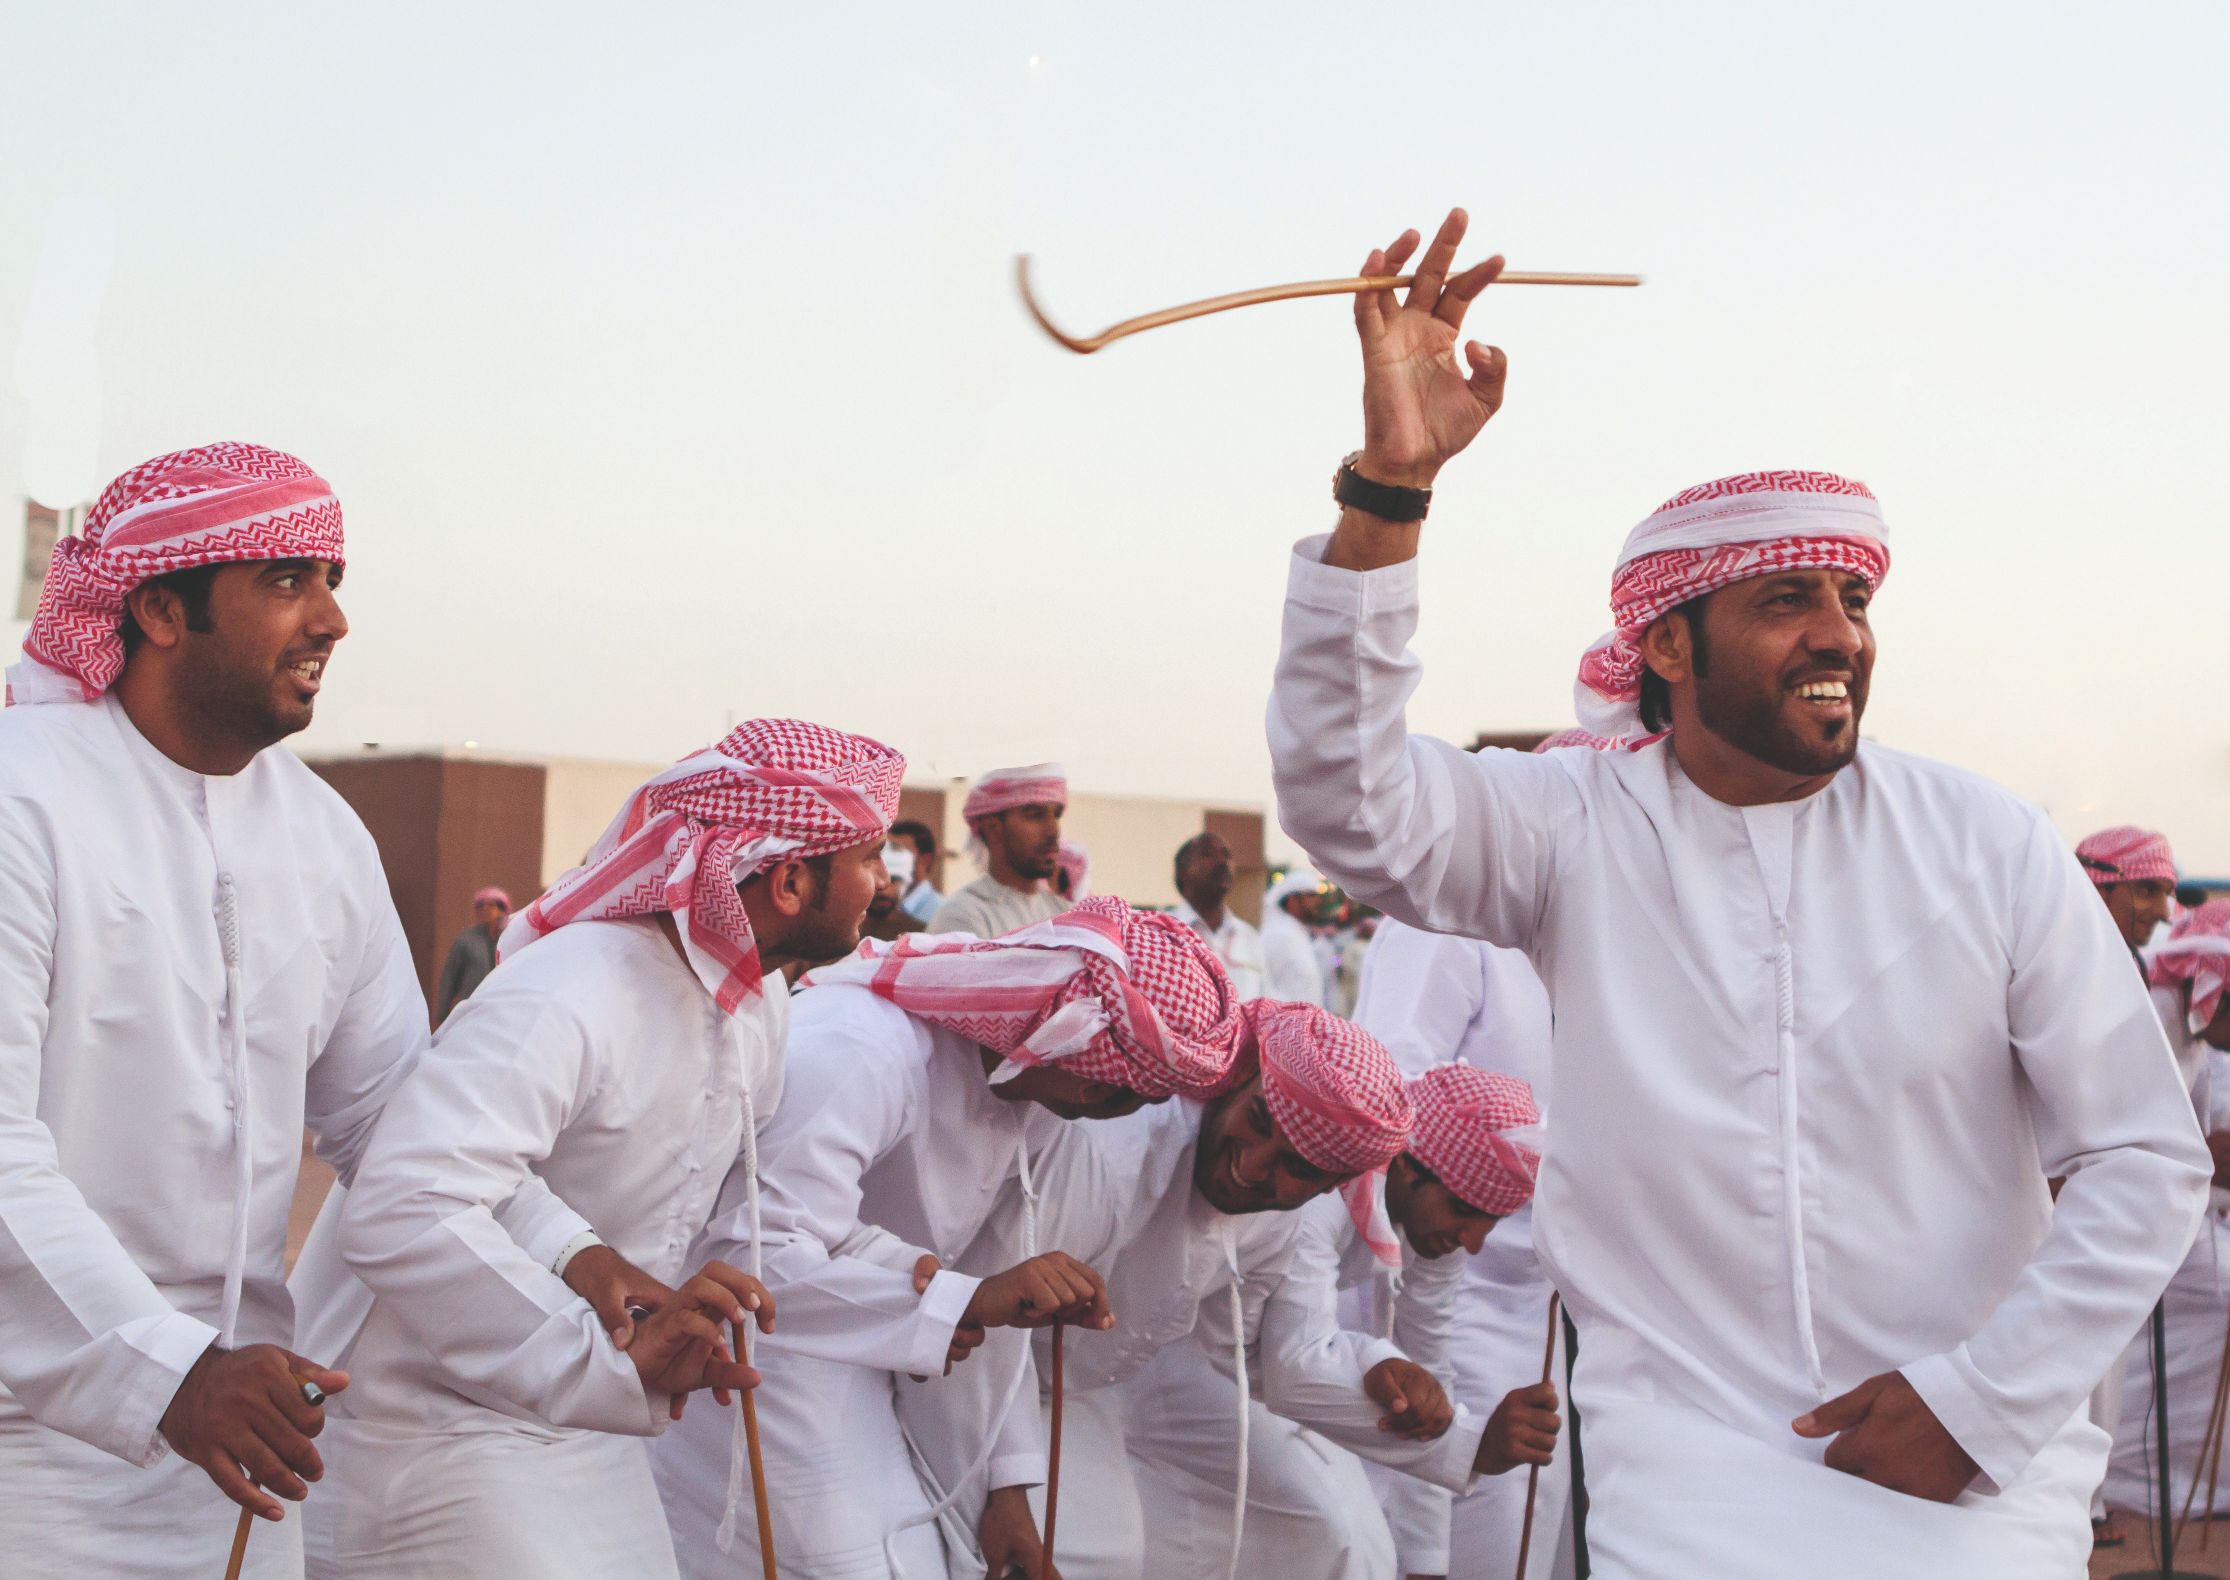 Danza árabe local durante la celebración del día nacional (Fundación de los EAU).